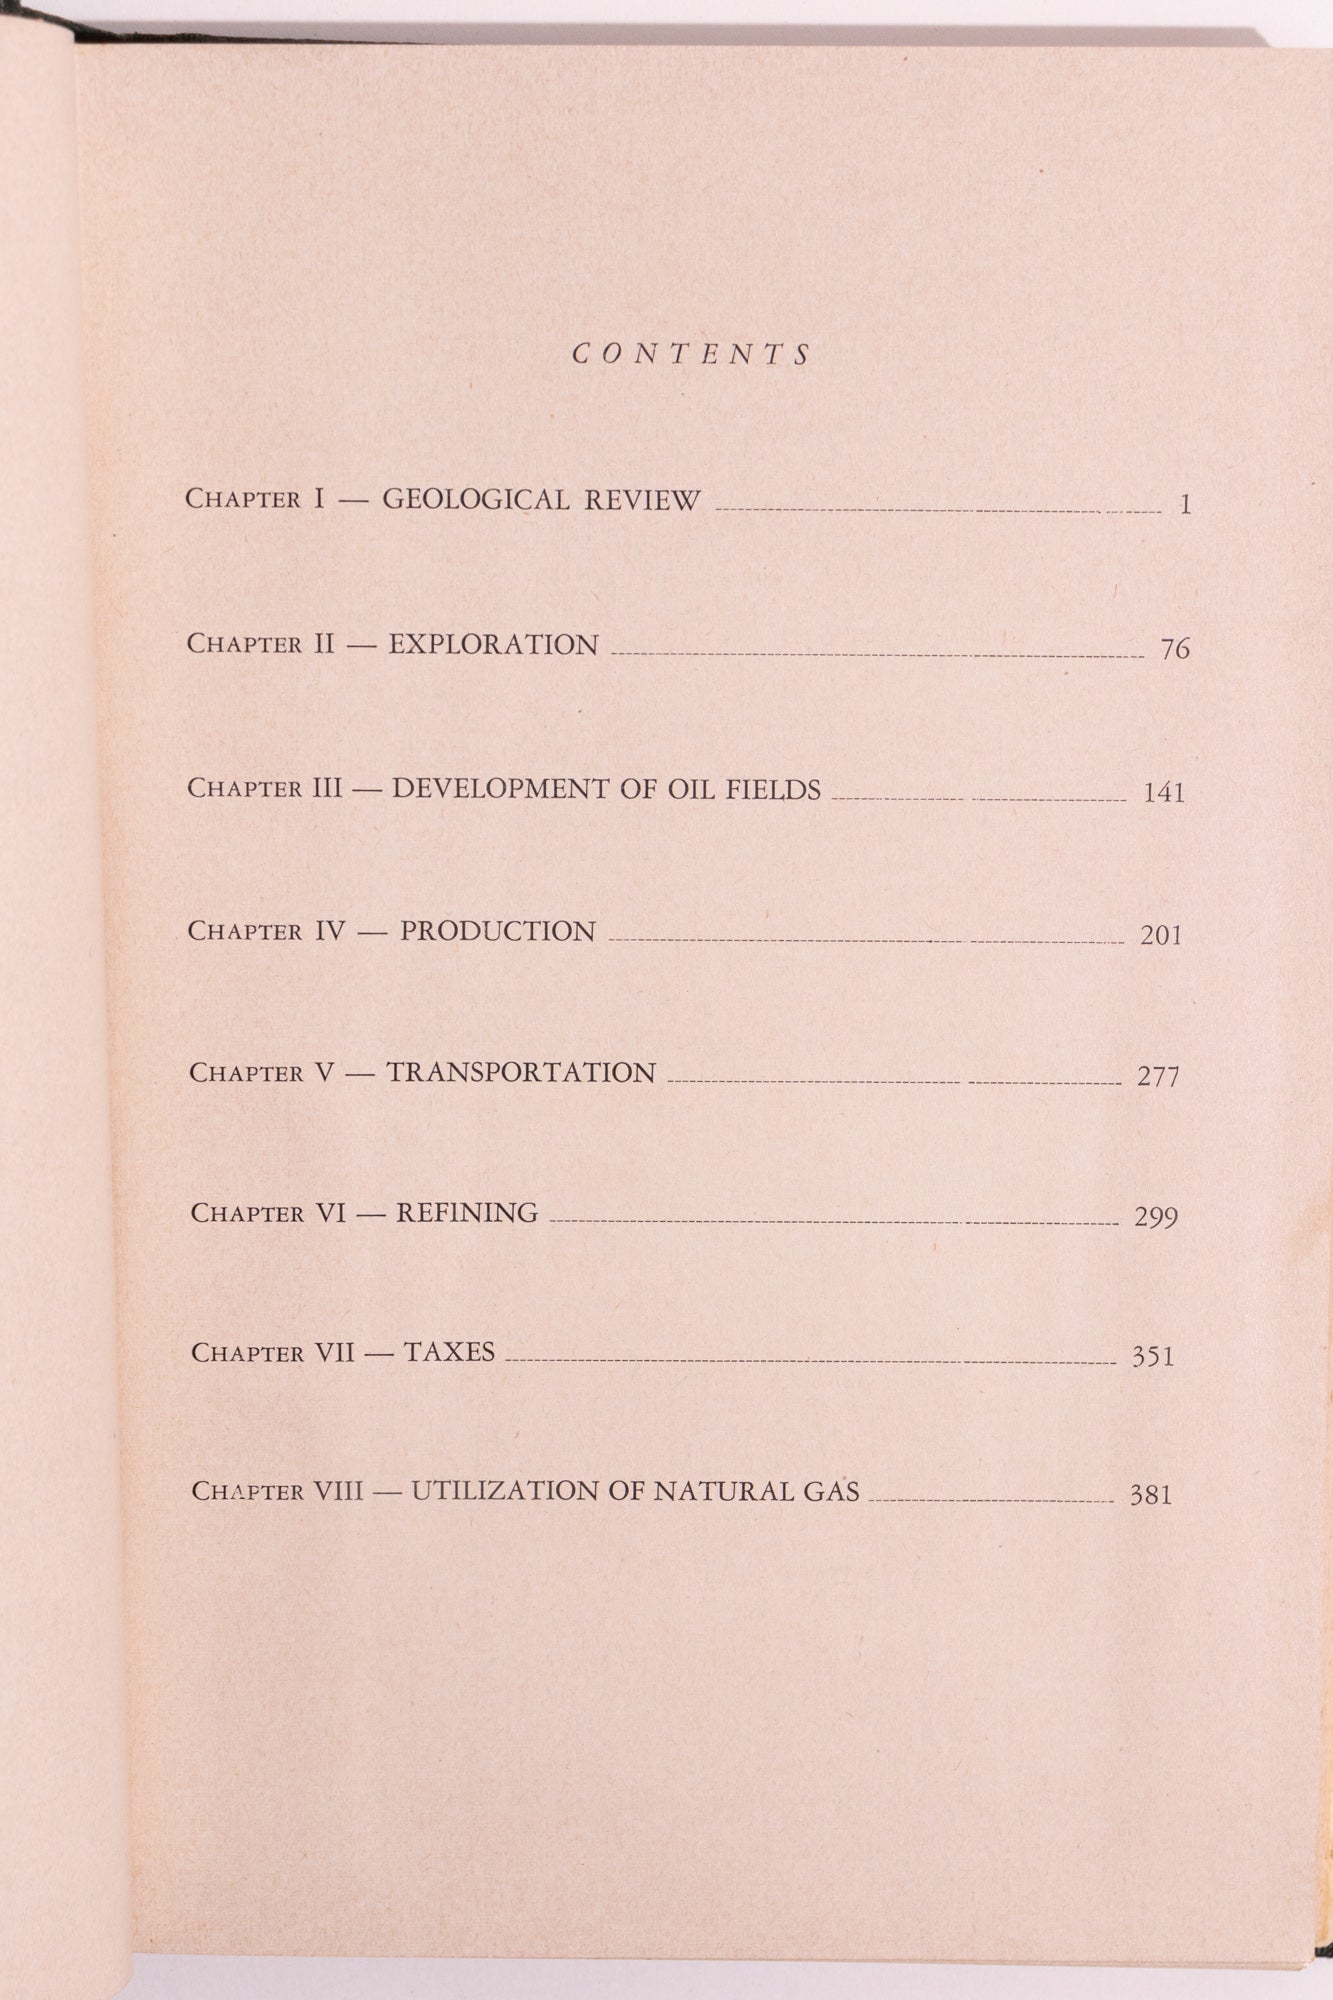 National Petroleum Convention: Caracas, Venezuela - Sep 9-18, 1951